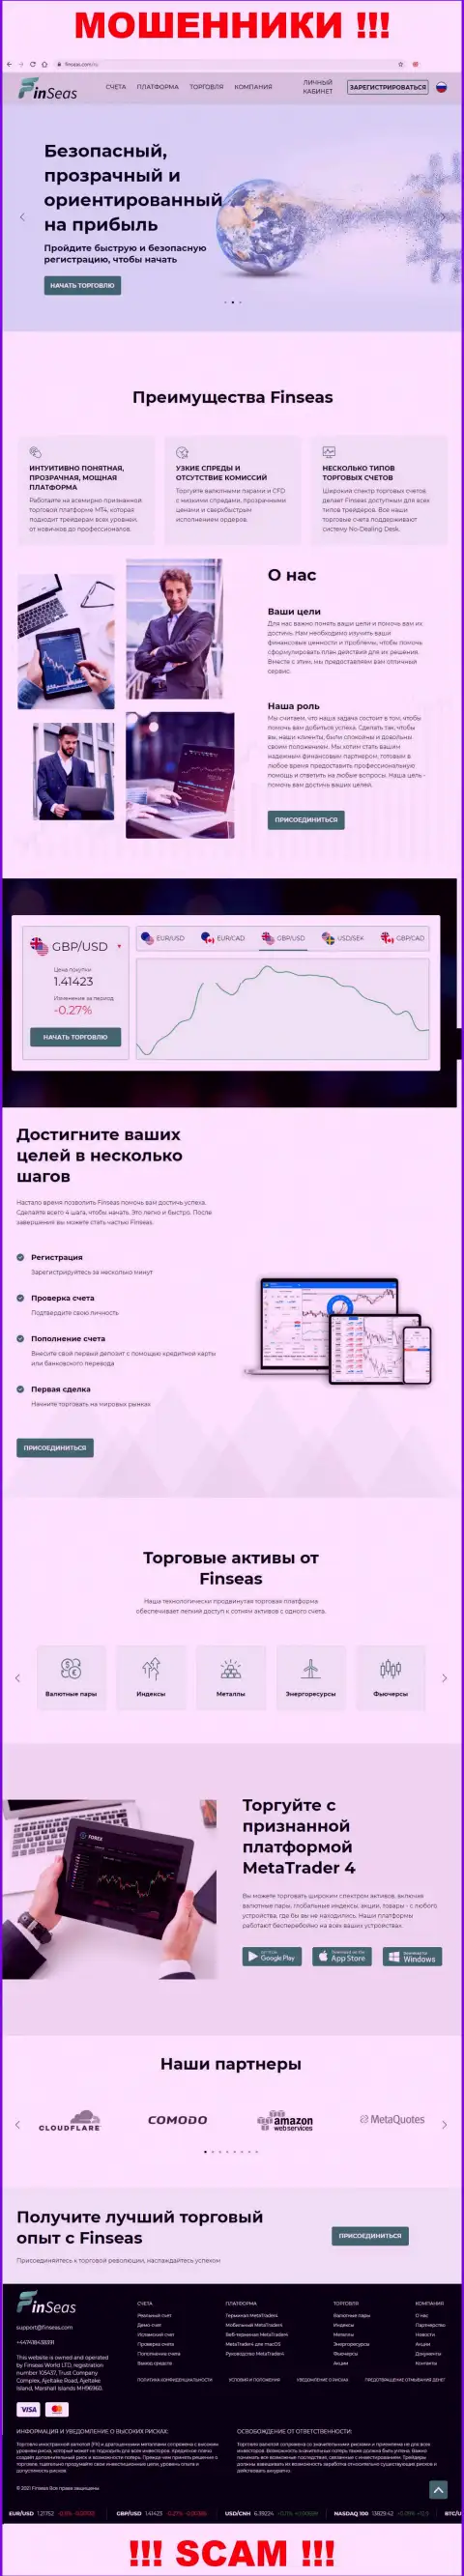 Веб-портал организации ФинСиас, забитый фальшивой информацией